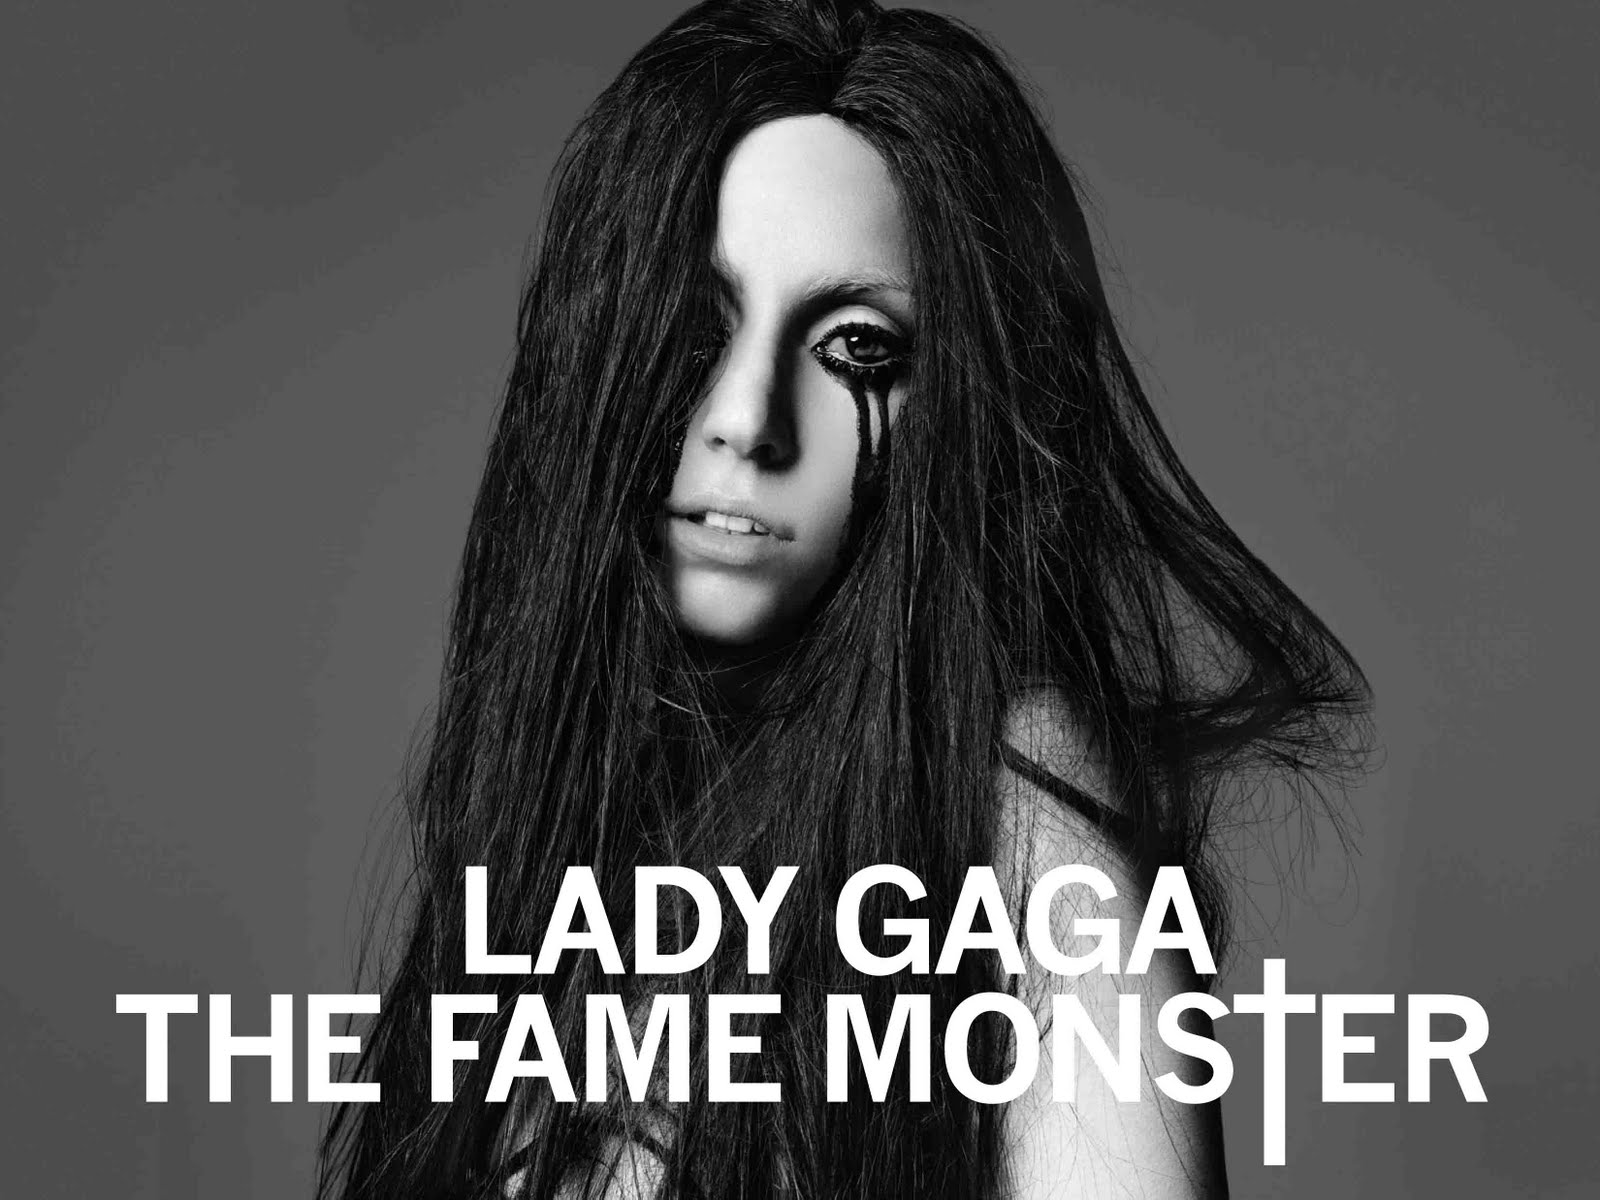 Resultado de imagem para The Fame Monster cover hd